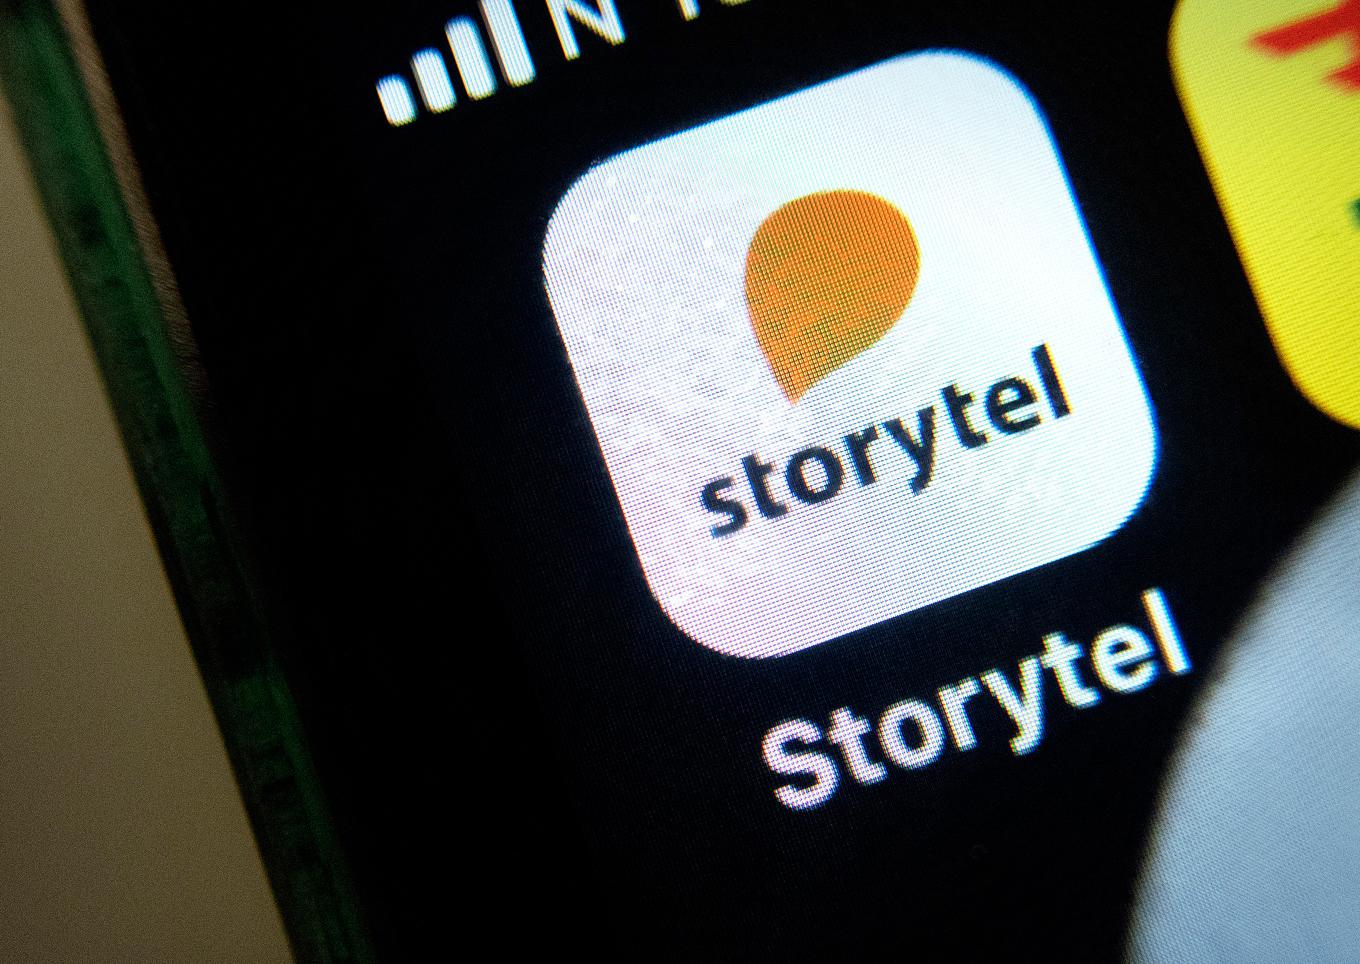 Storytel utsattes för en betygsattack. Arkivbild. Foto: Gorm Kallestad/NTB/TT